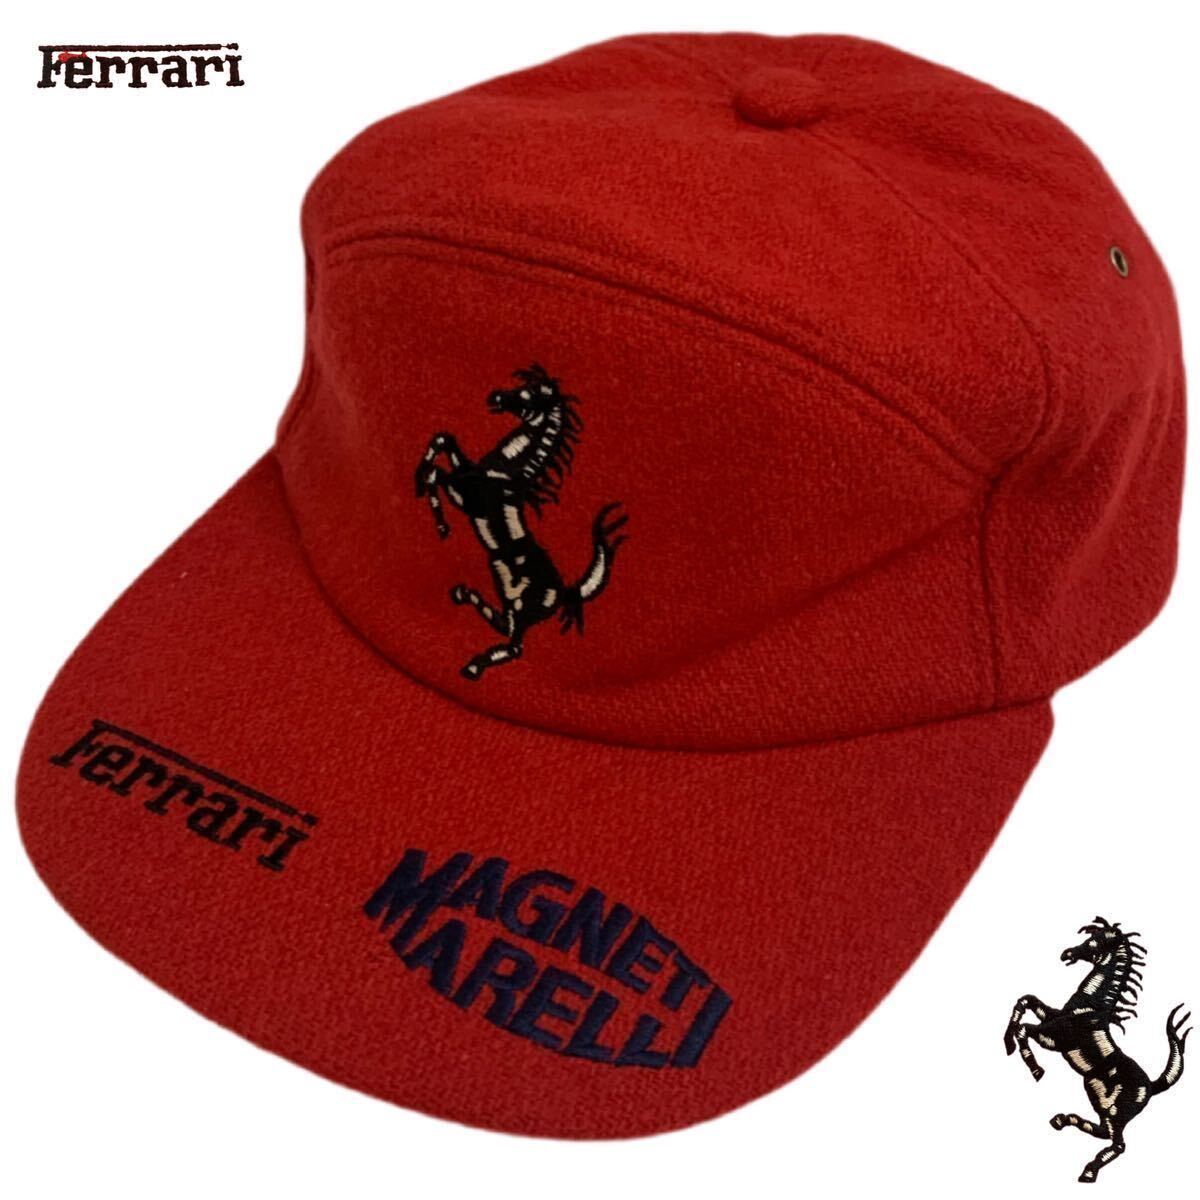 VINTAGE ヴィンテージ Ferrari フェラーリ MAGNETI MARELLI CAP キャップ 帽子 車メーカー 刺繍 アジャスター ウール レッド系 アーカイブ_画像1